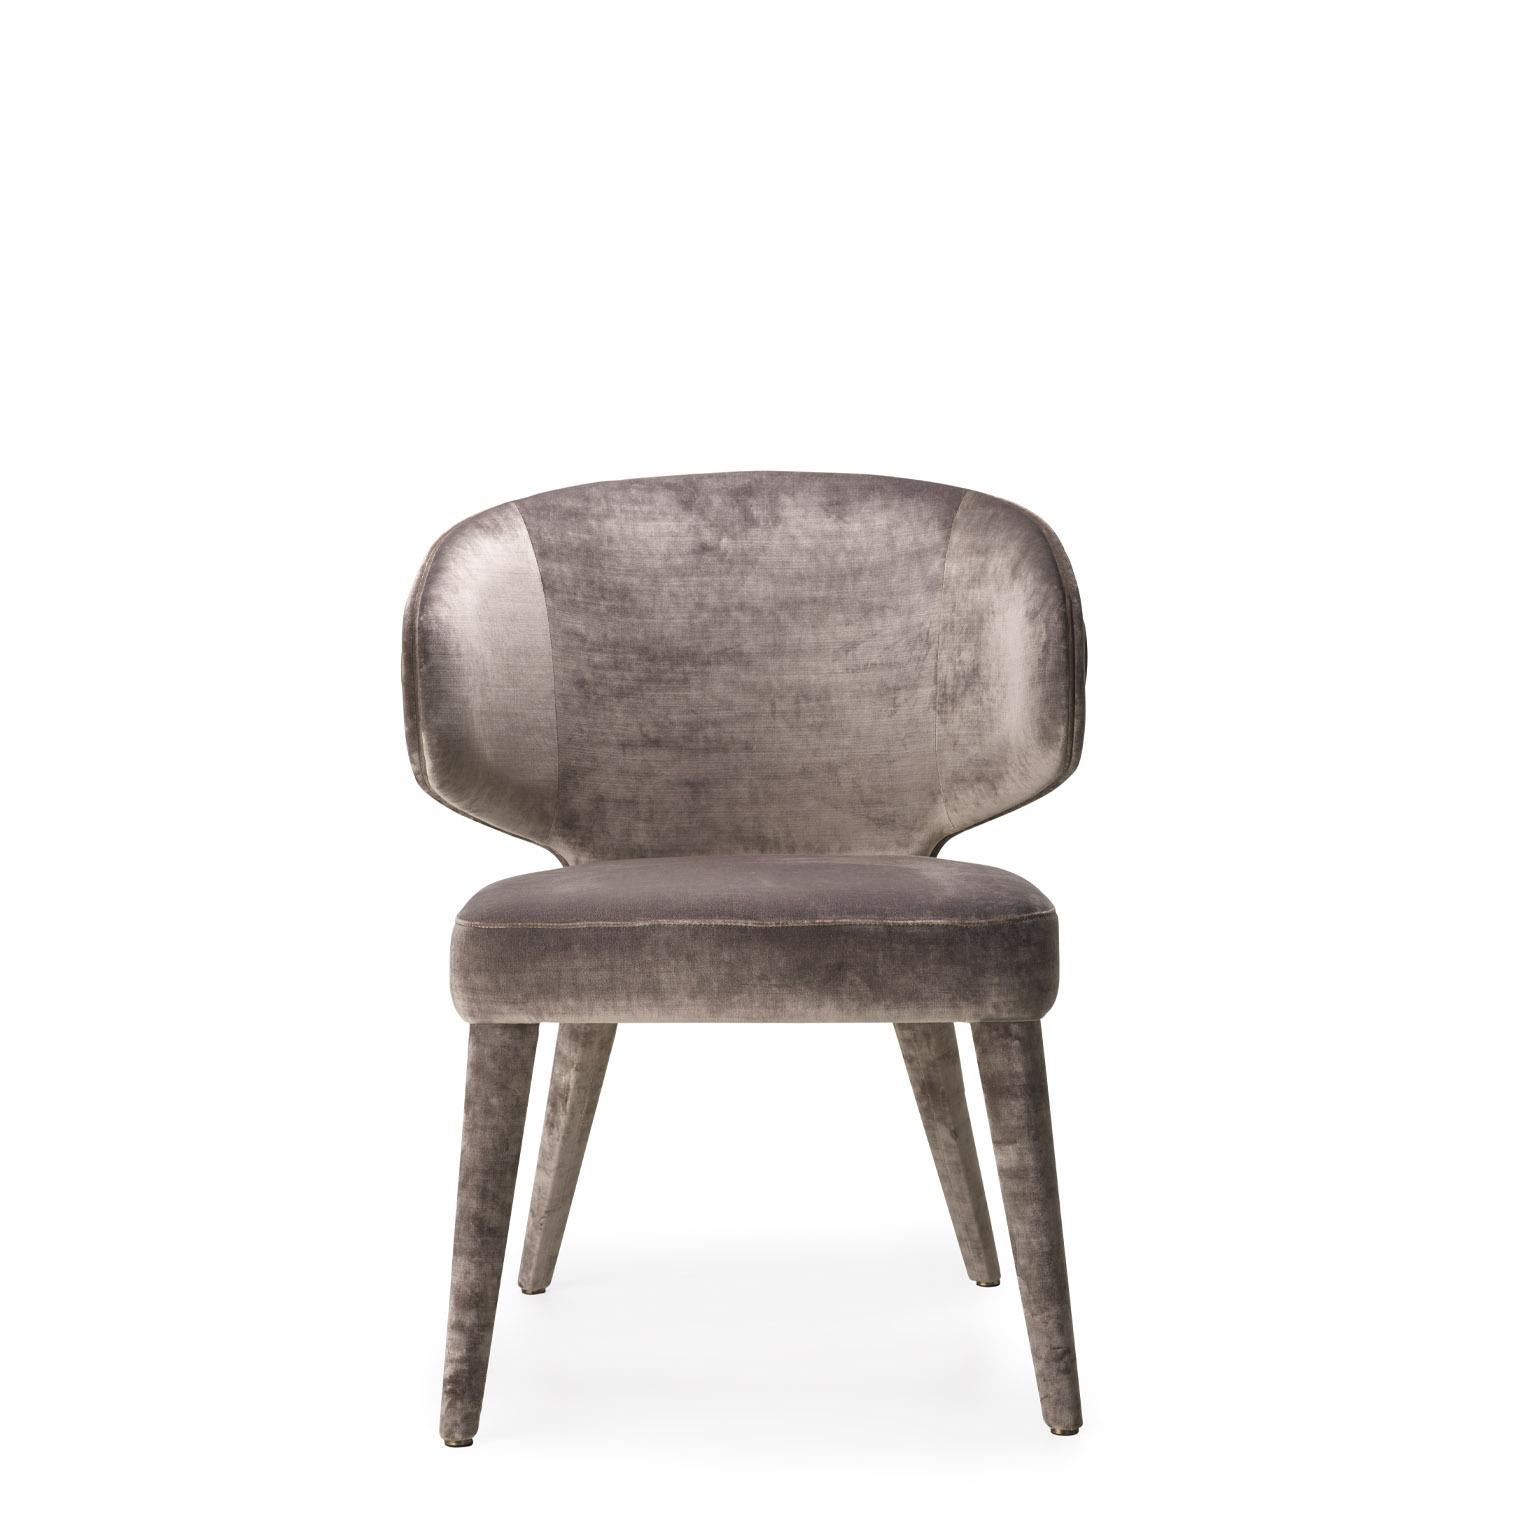 Expression des valeurs de l'artisanat de maître, notre chaise Circe est un mélange unique de matériaux bruts prisés et de détails réfléchis. Caractérisé par des volumes souples, Circe est doté d'un dossier enveloppant qui accueille et protège tout